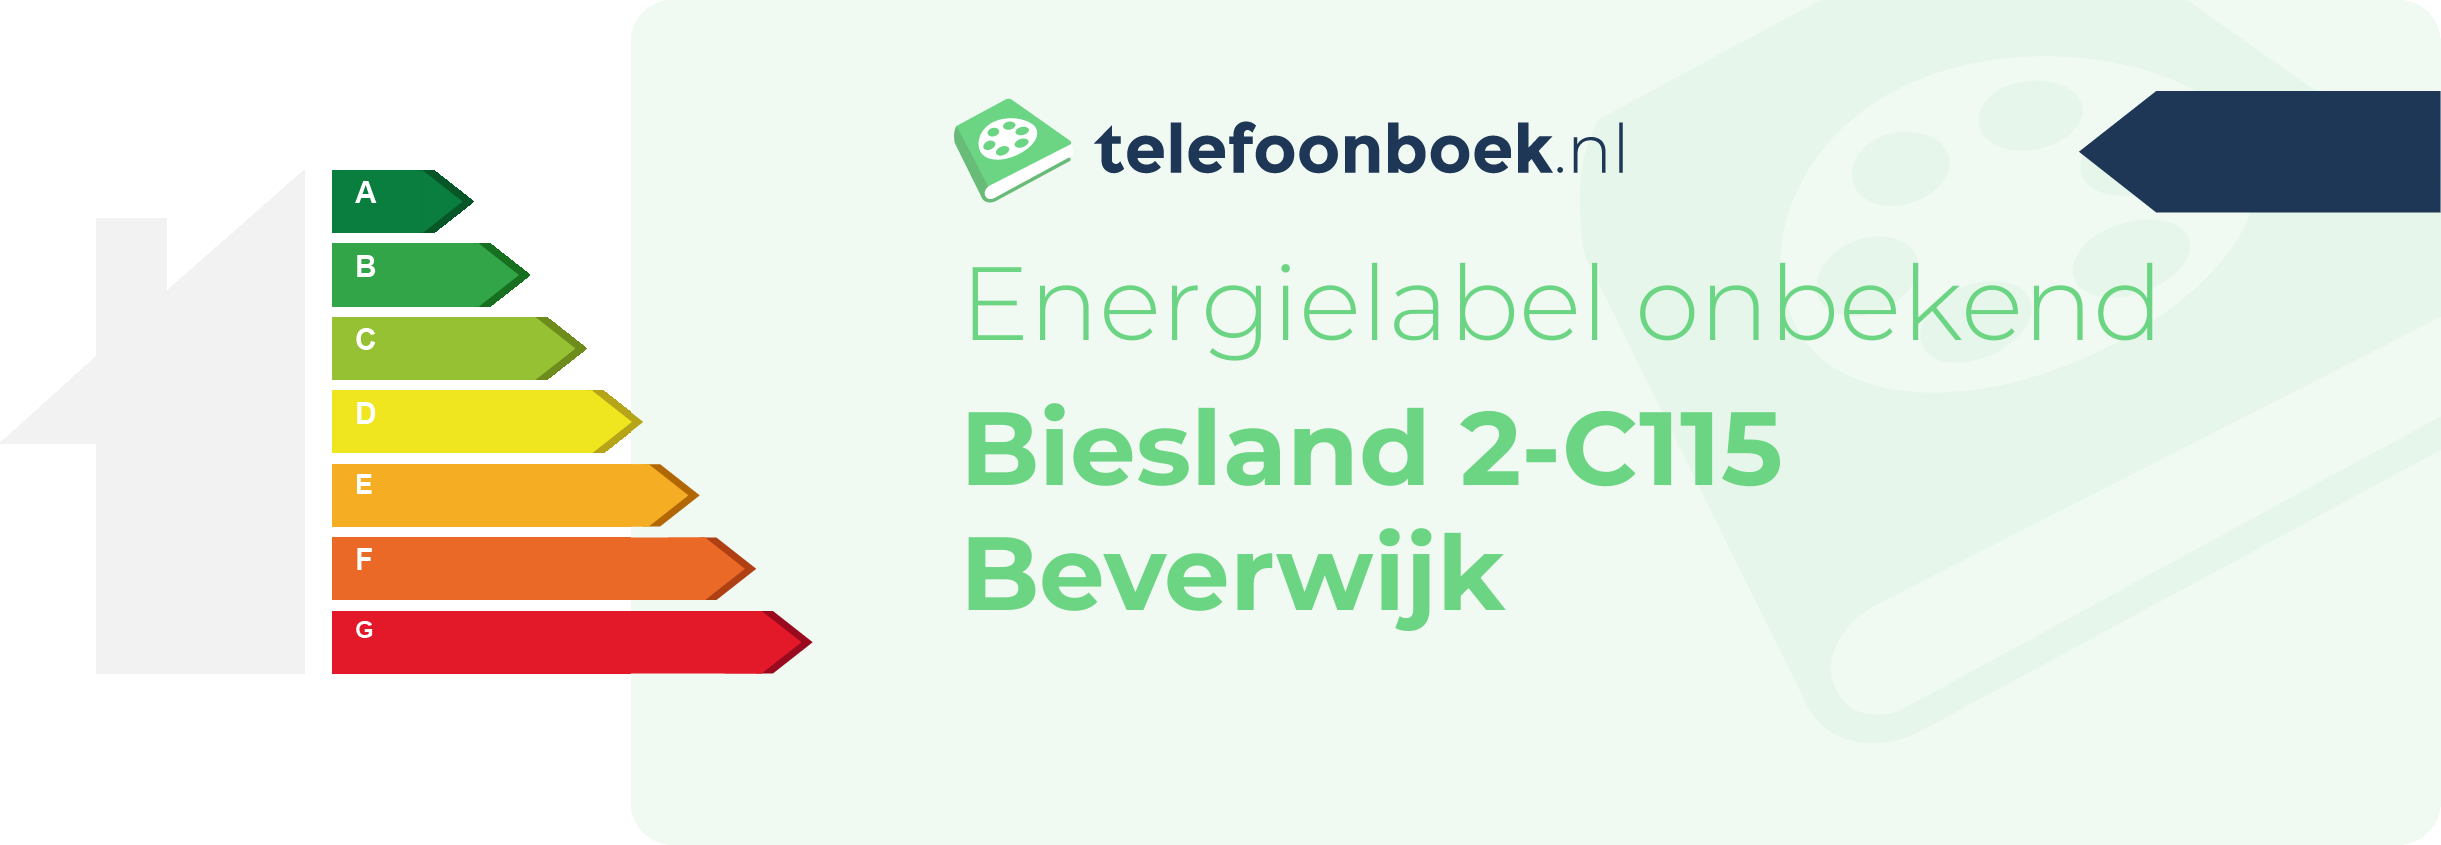 Energielabel Biesland 2-C115 Beverwijk